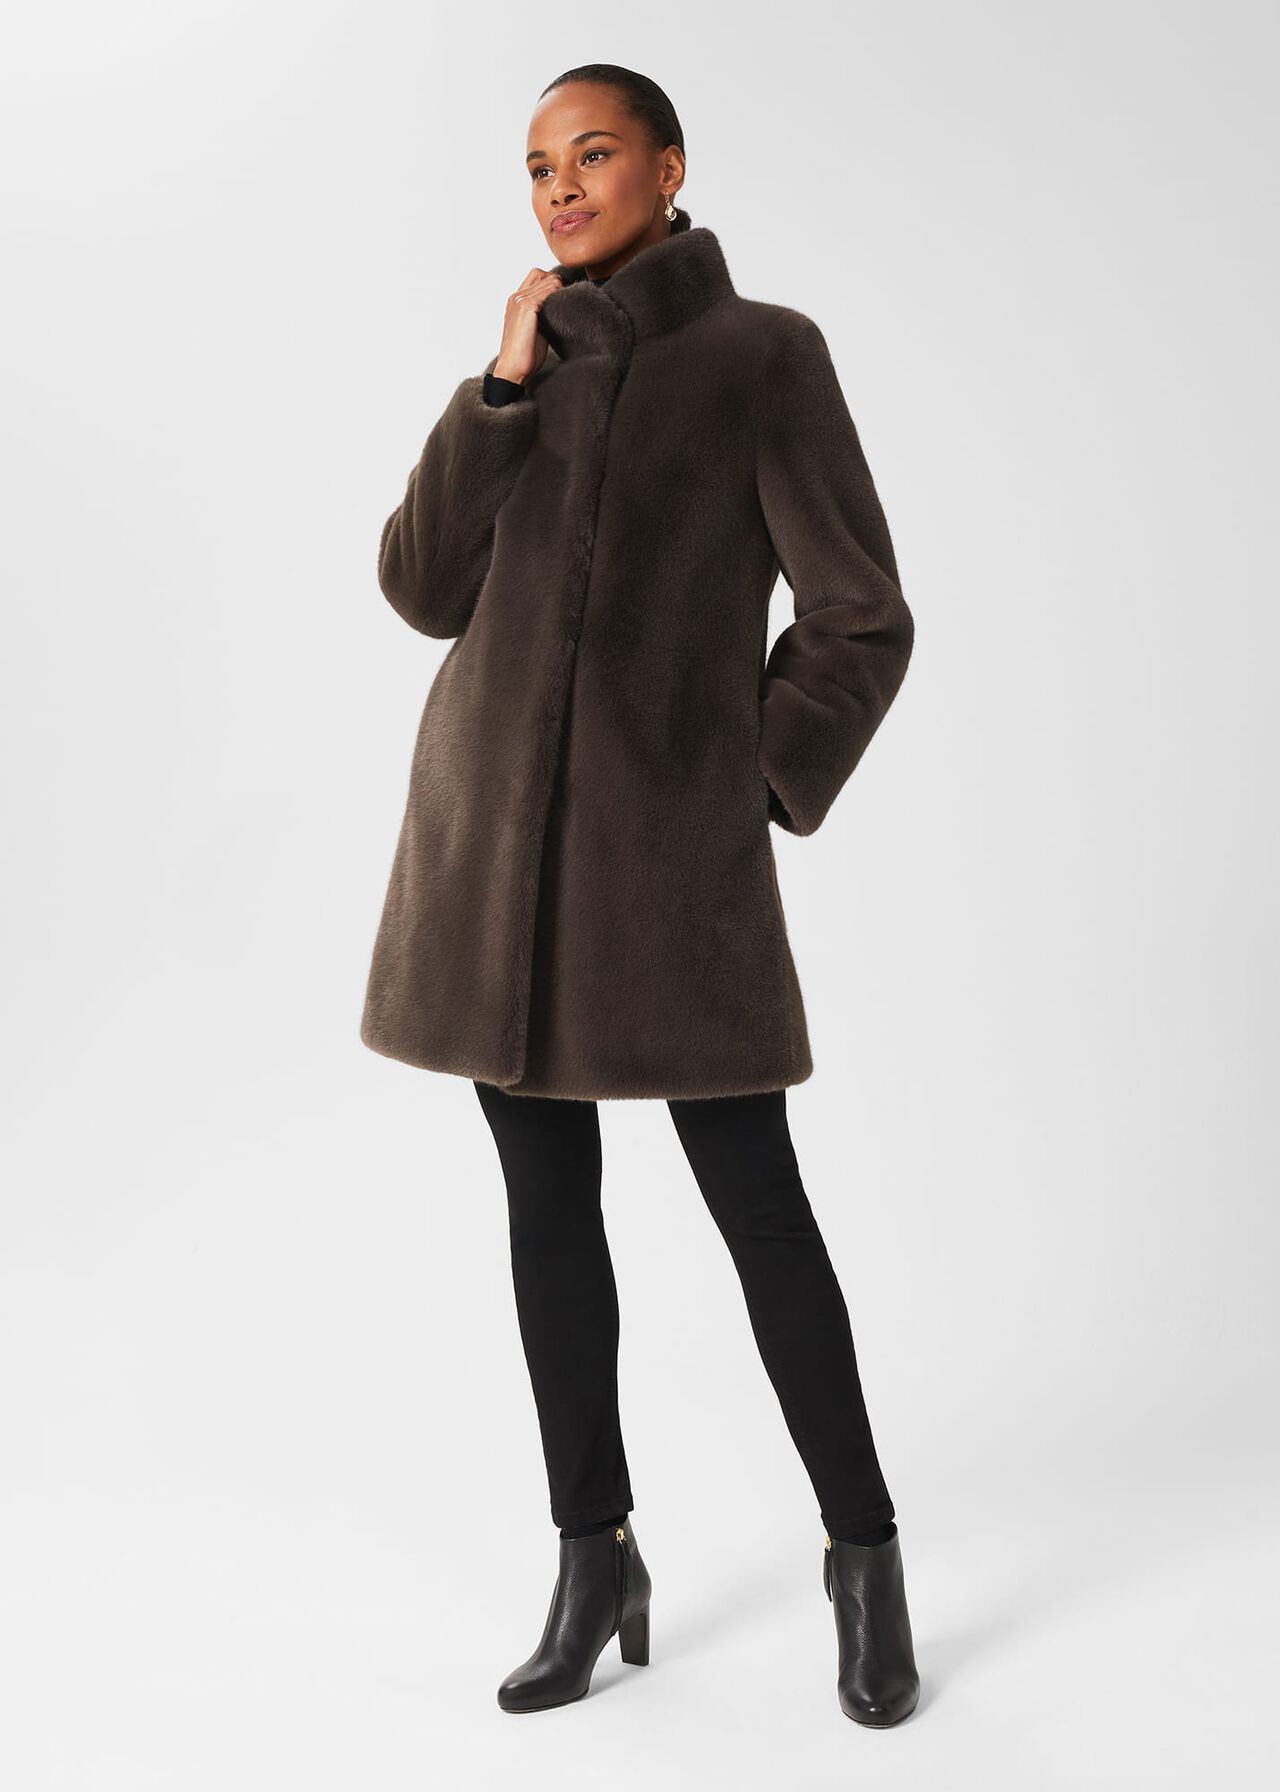 Maddox Faux Fur Coat, Charcoal Grey, hi-res